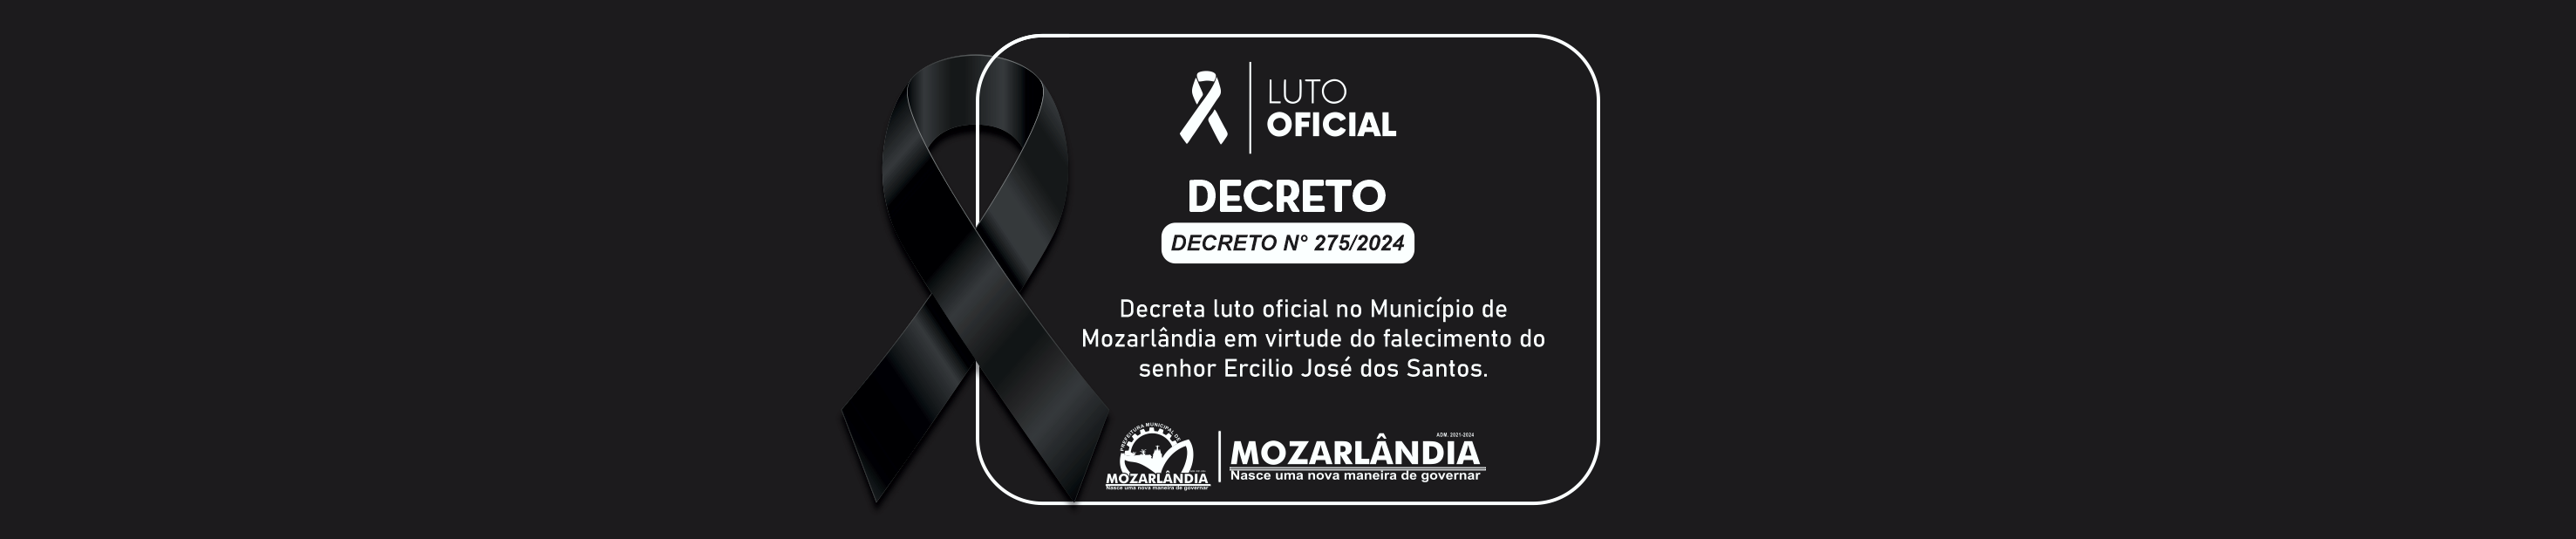 Decreta luto oficial no Município de Mozarlândia em virtude do falecimento do senhor Ercilio José dos Santos.